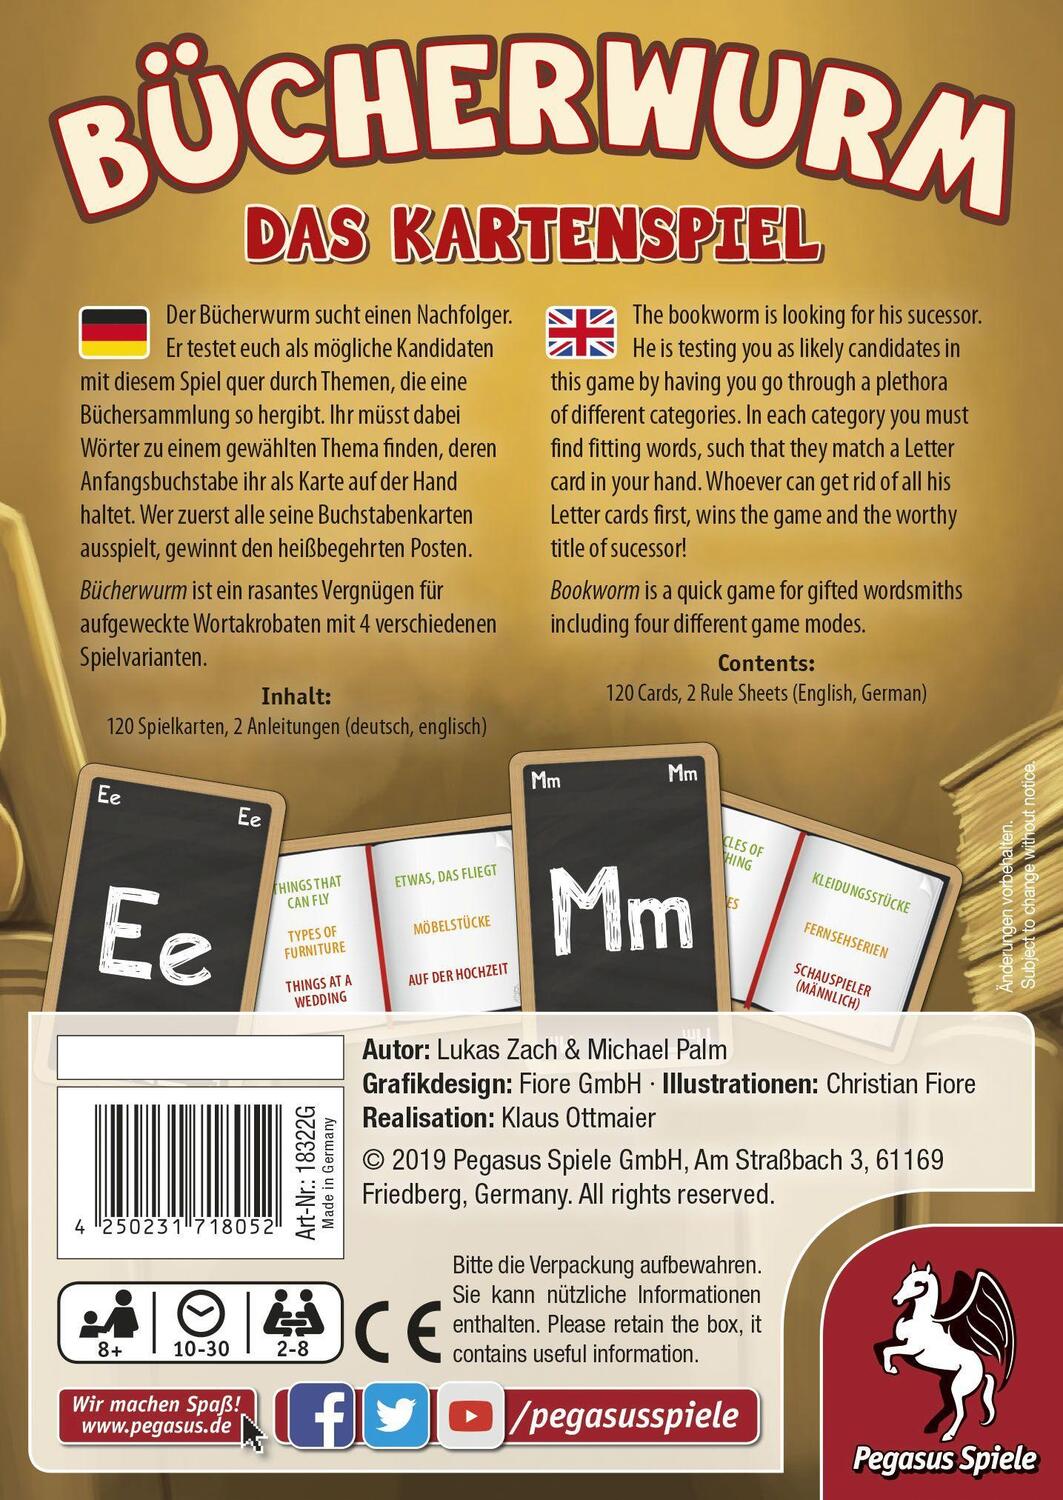 Bild: 4250231718052 | Bücherwurm - Das Kartenspiel | Spiel | Deutsch | 2019